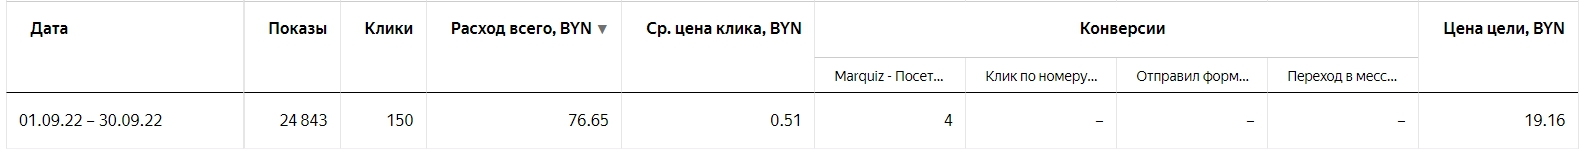 Статистика по конверсиям в Яндекс Директе в период с 01.09.2022 по 30.09.2022